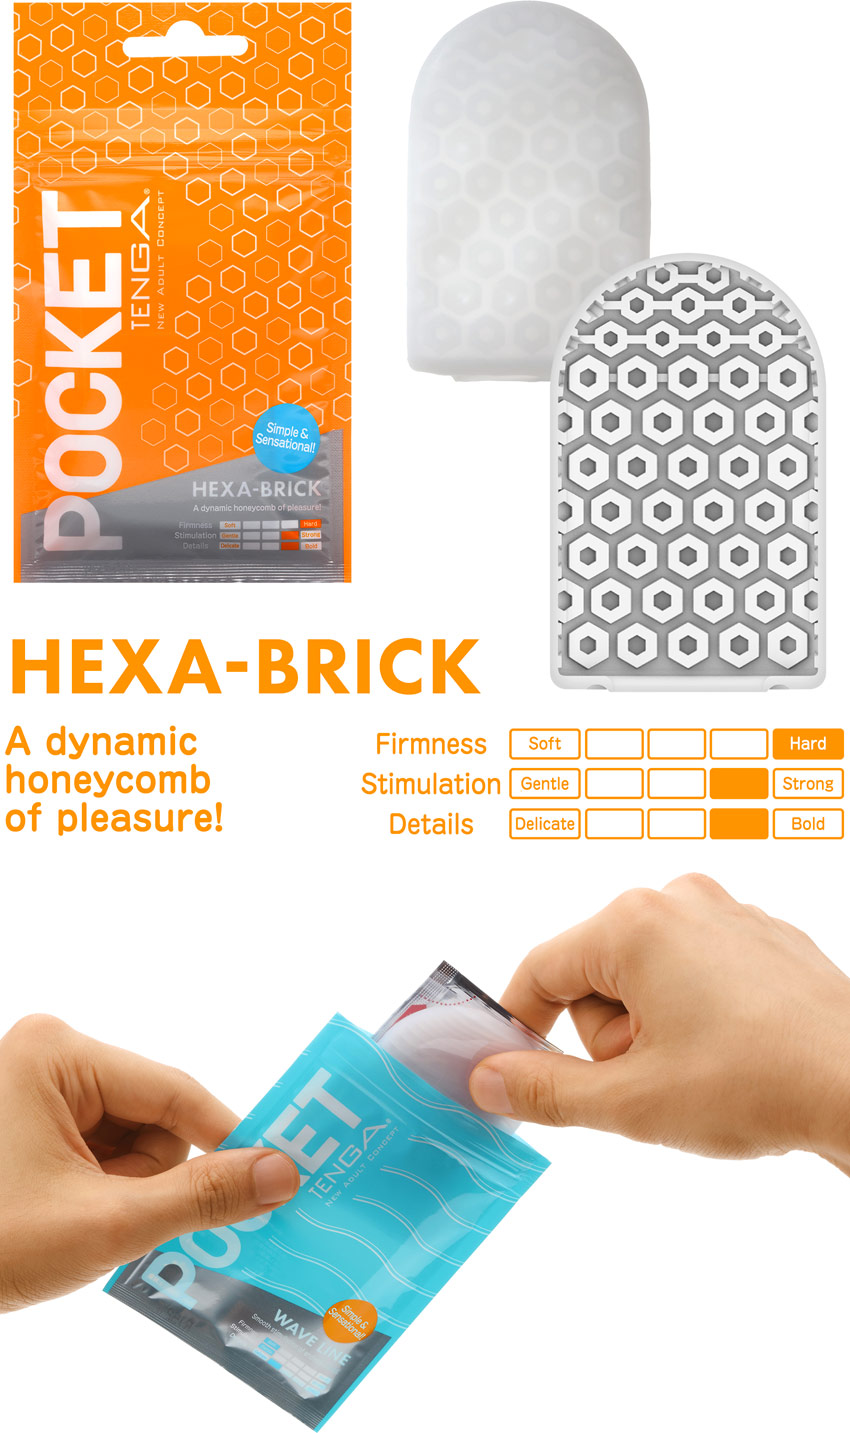 Tenga Pocket Masturbator - Hexa-Brick